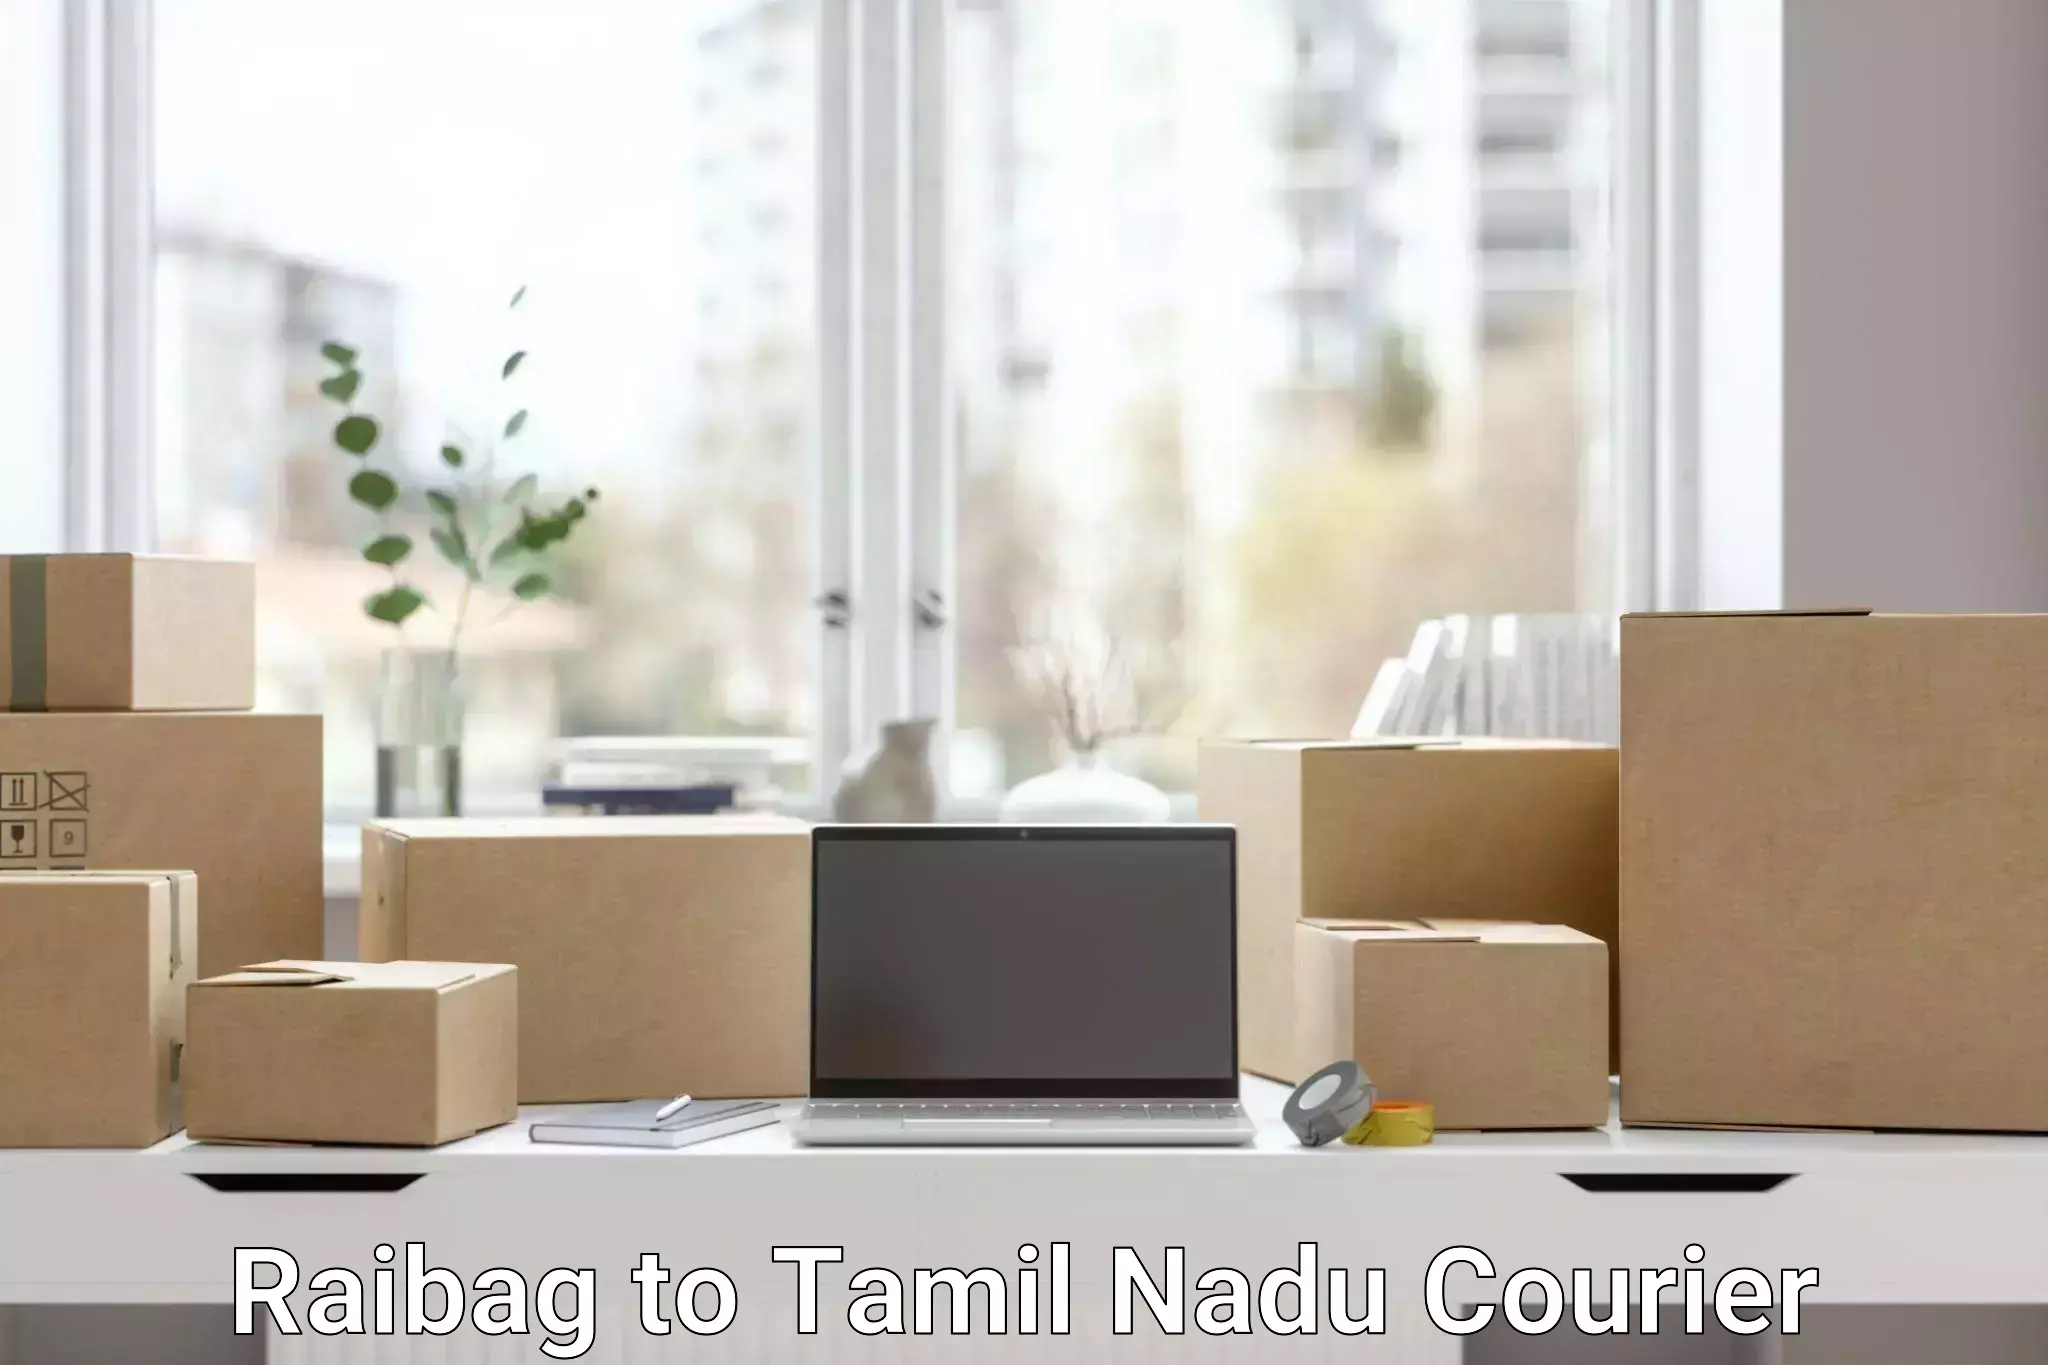 Speedy delivery service Raibag to Tamil Nadu